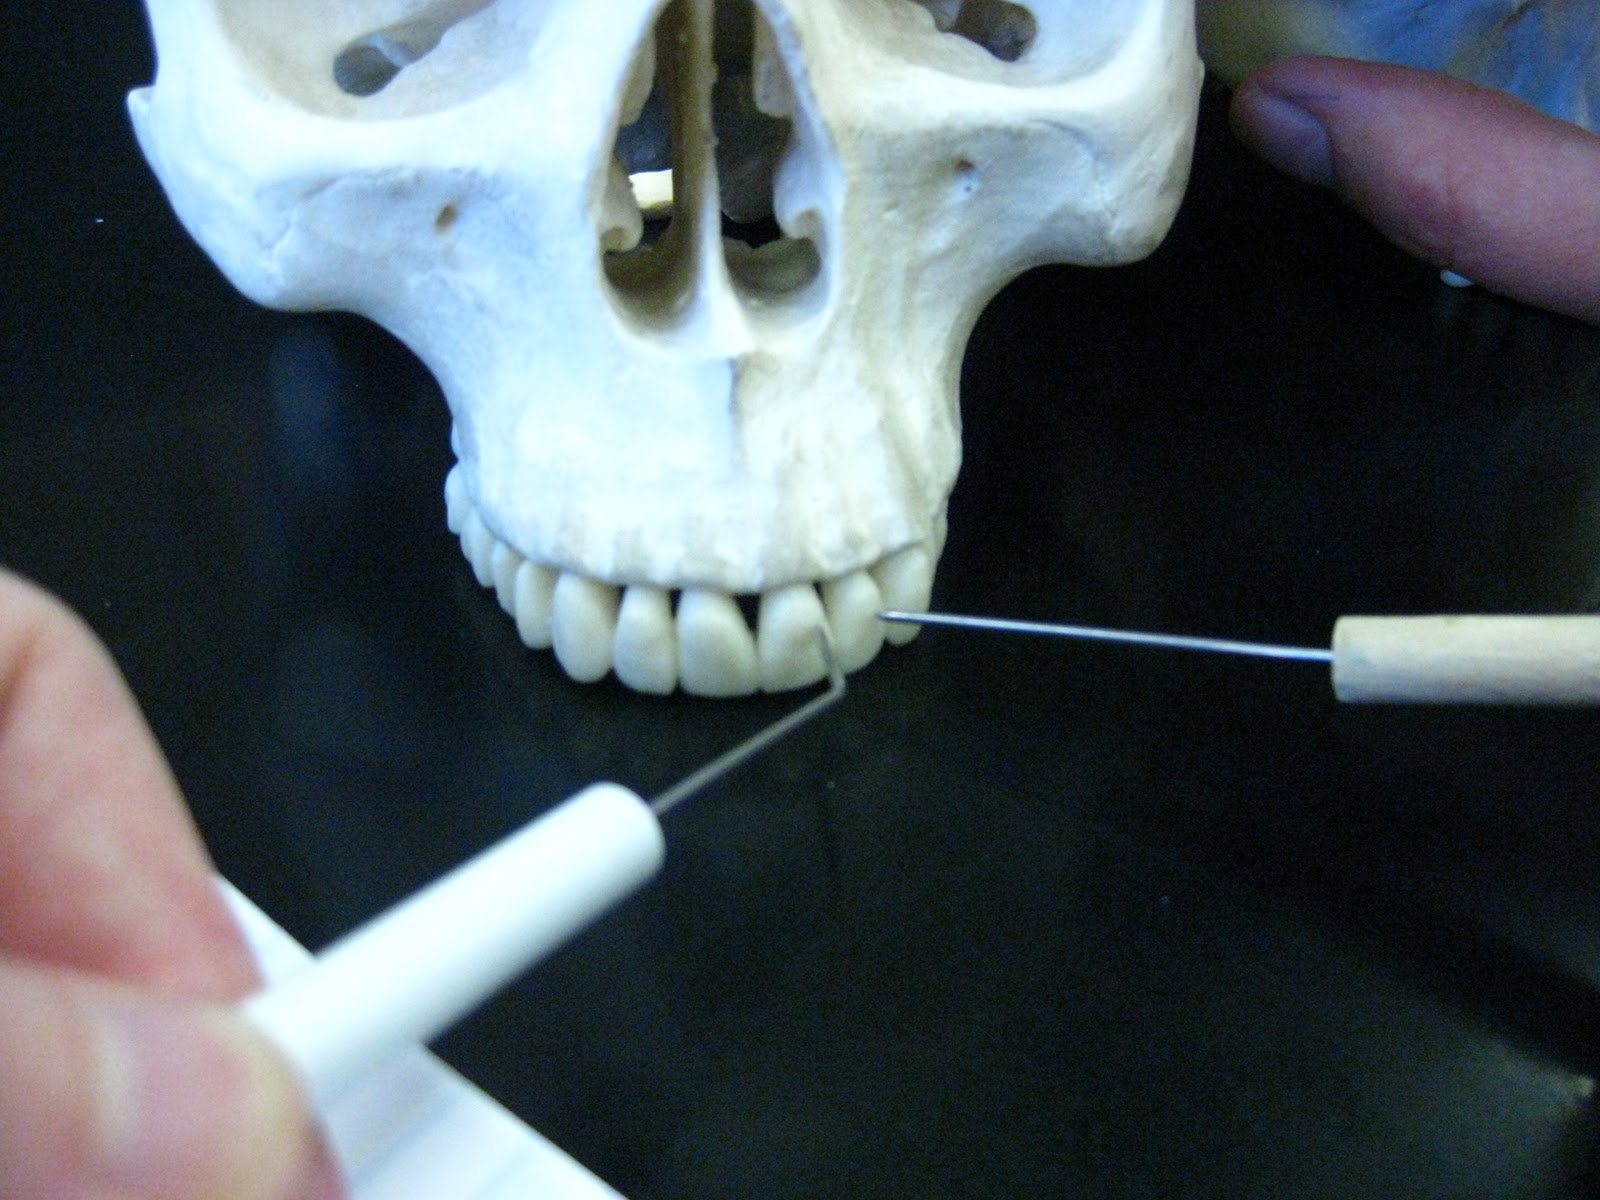 Boned: Human Skull - teeth